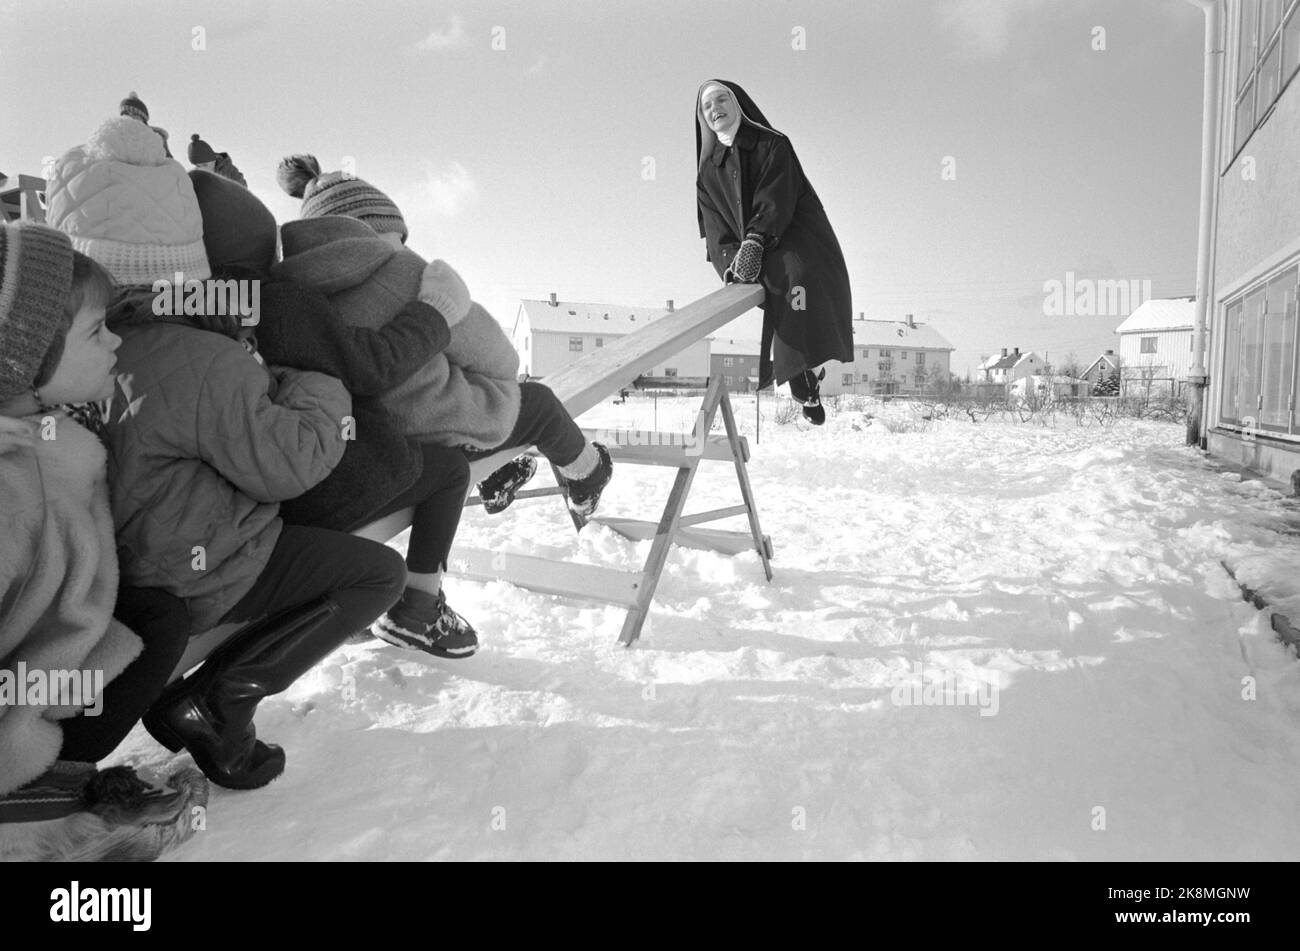 Bodø 1965 le monache cattoliche di St. Sunniva Hemm a Bodø gestiscono asilo, istruzione di judo, teatro amatoriale, balletto e danza pop. I bambini dell'asilo giocano sulla neve con la sorella Prisca. Suor Prisca, Svizzera, ha frequentato la Child Welfare Academy di Oslo. 50 figli sono fidati di lei e delle altre sorelle. Foto: Ivar Aaserud / corrente / NTB Foto Stock